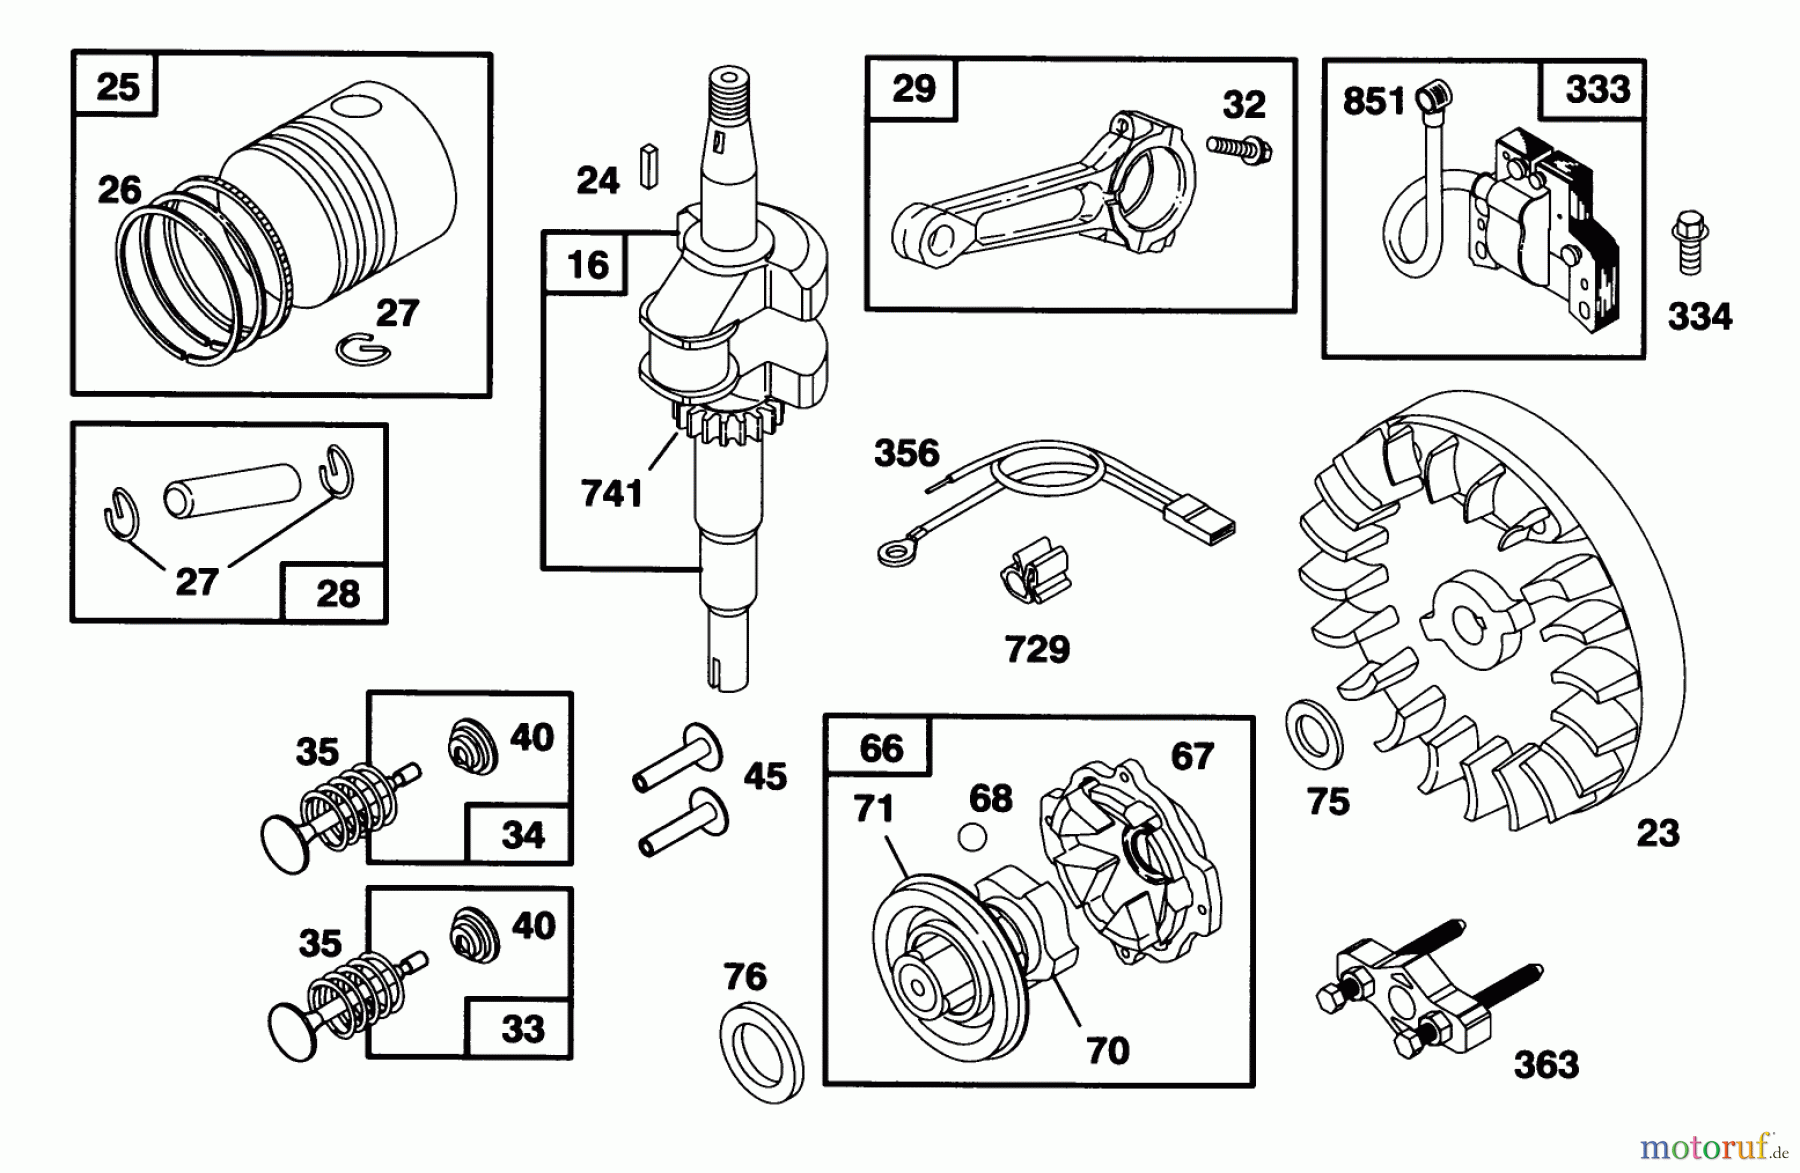  Toro Neu Mowers, Walk-Behind Seite 1 16410 - Toro Lawnmower, 1993 (3900001-3999999) ENGINE BRIGGS & STRATTON MODEL 95902-3153-01 #2